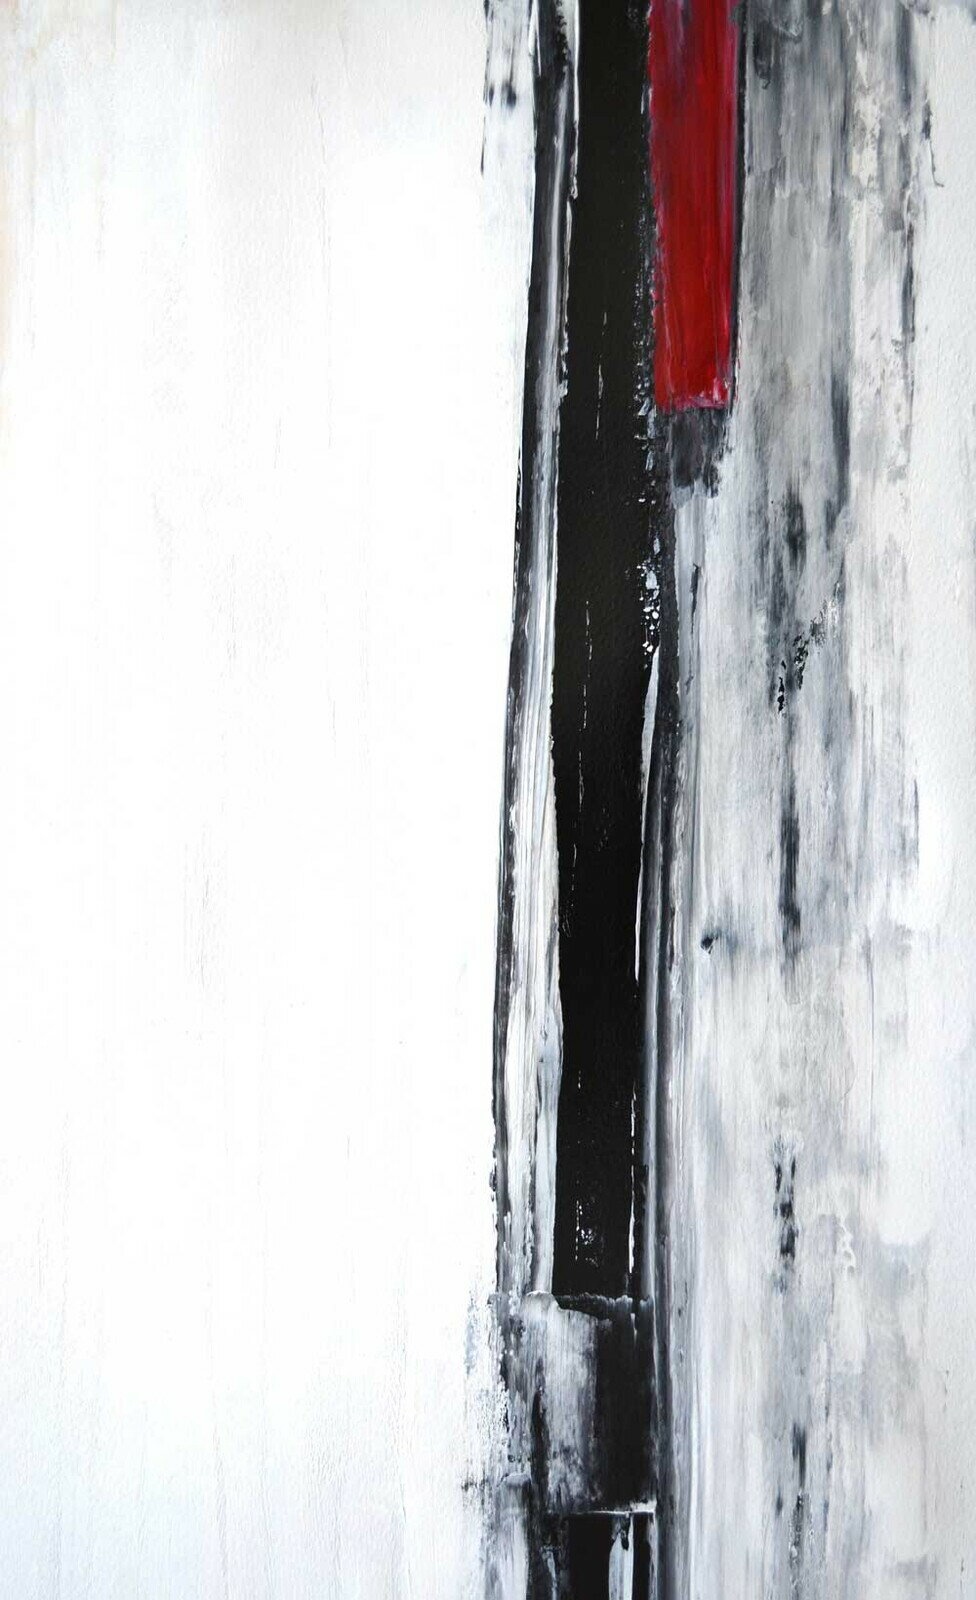 キャンバスパネル Art Panel T30 Galler Black and White Abstract Art Painting iap-51603 送料無料